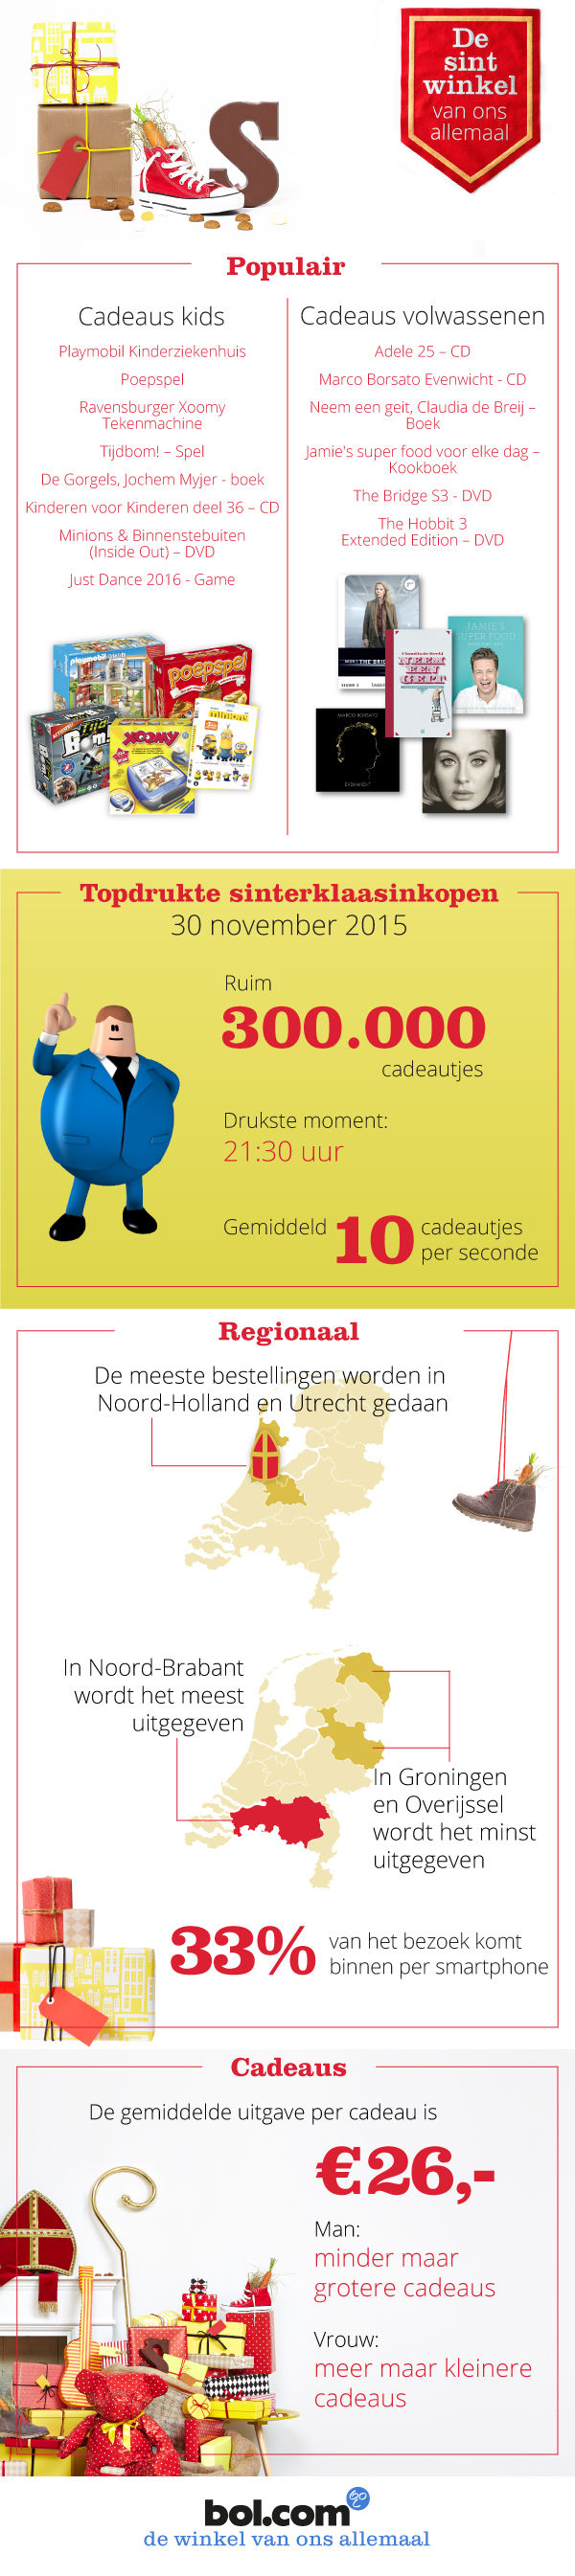 Sint-infographic_V6